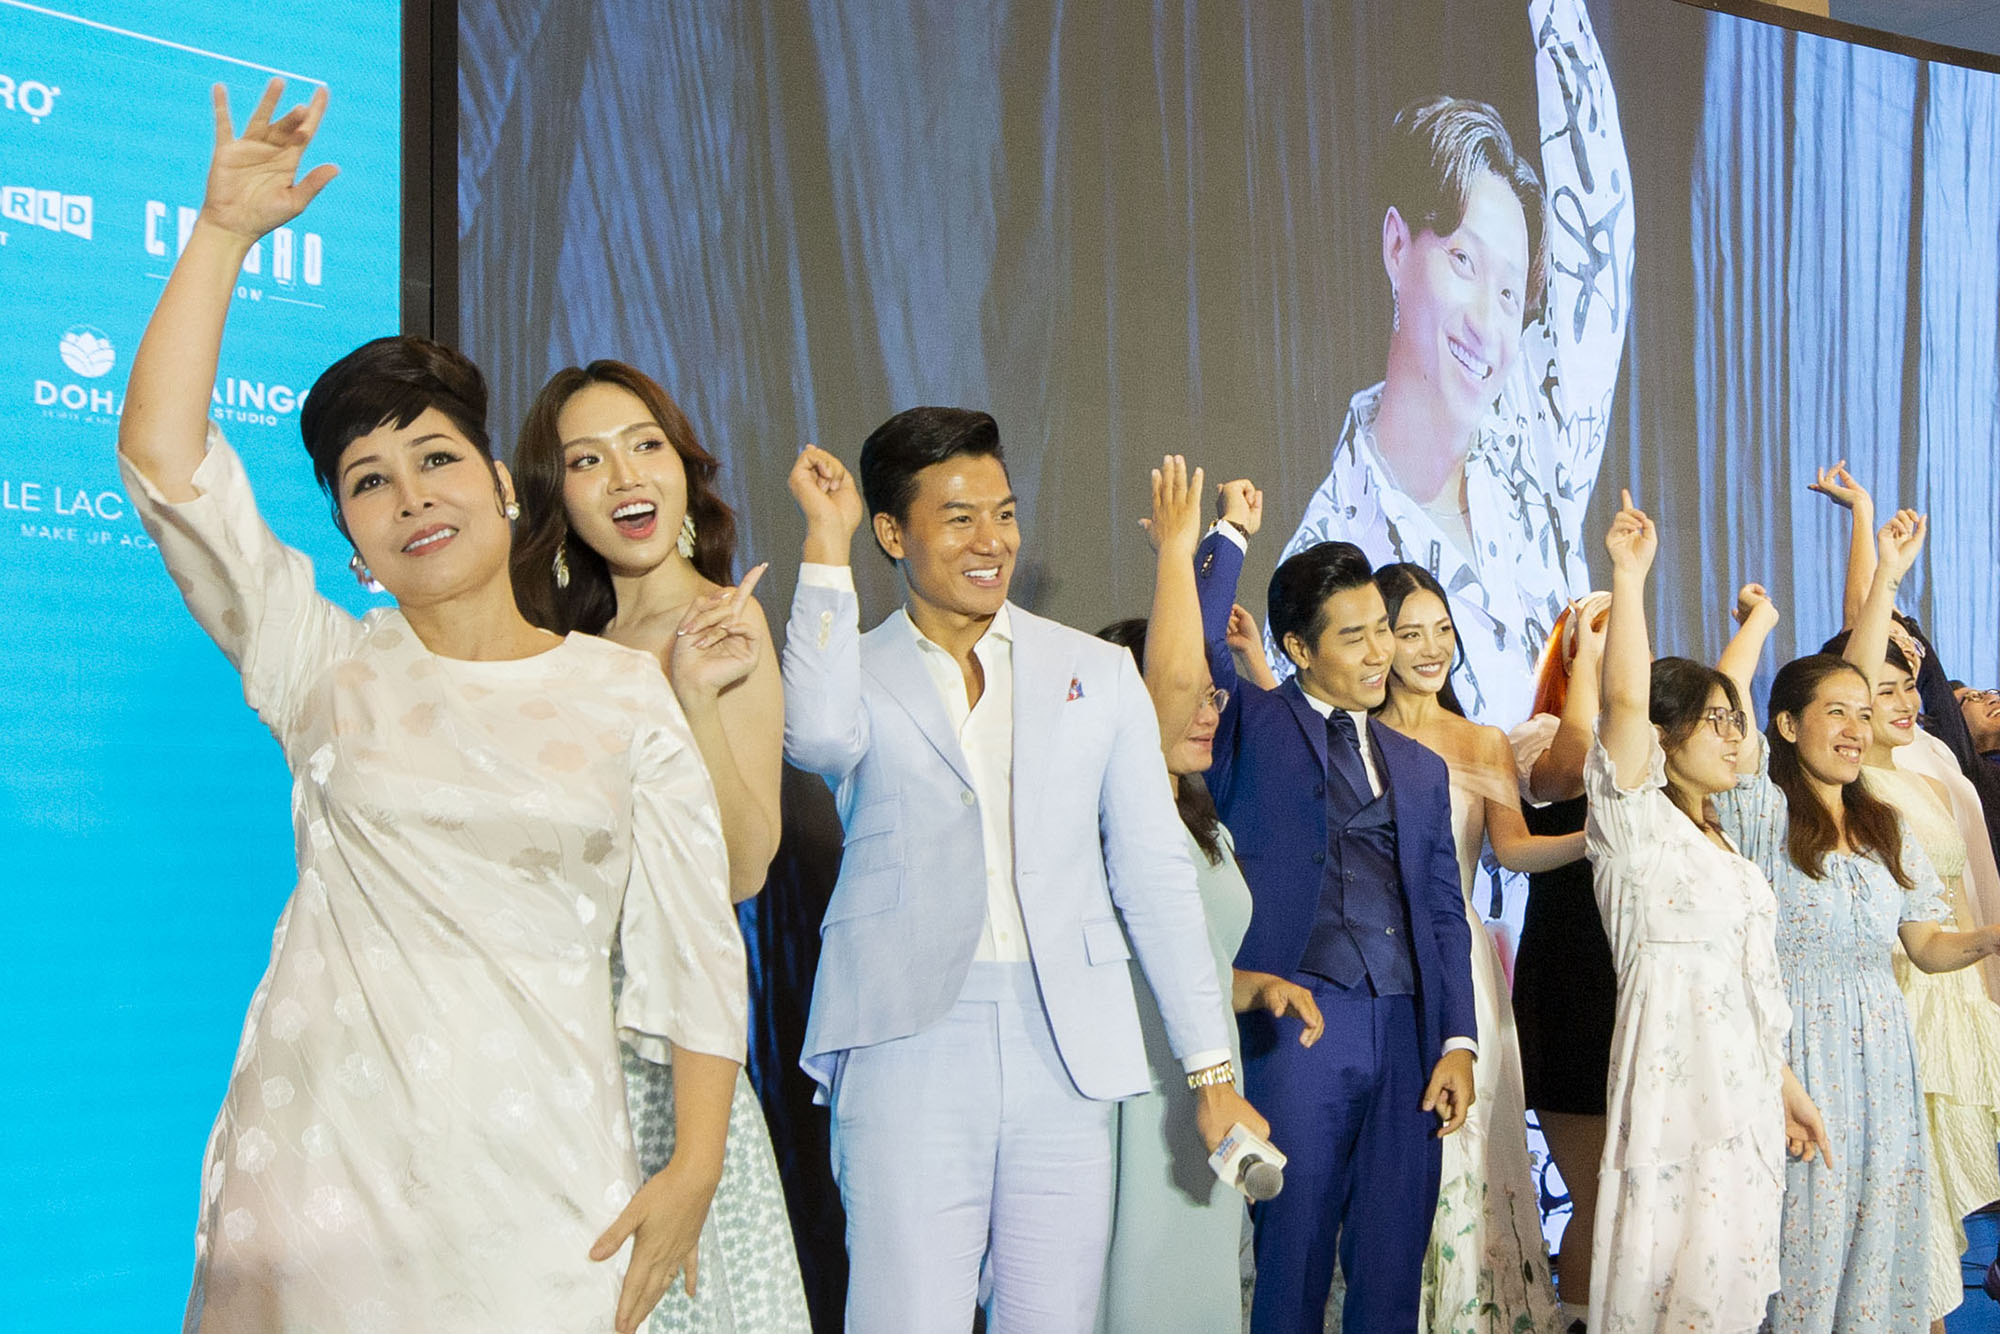 NSND Hồng Vân cùng dàn sao nhảy trong sự kiện 'Chuyến xe nhan sắc' - Ảnh 11.